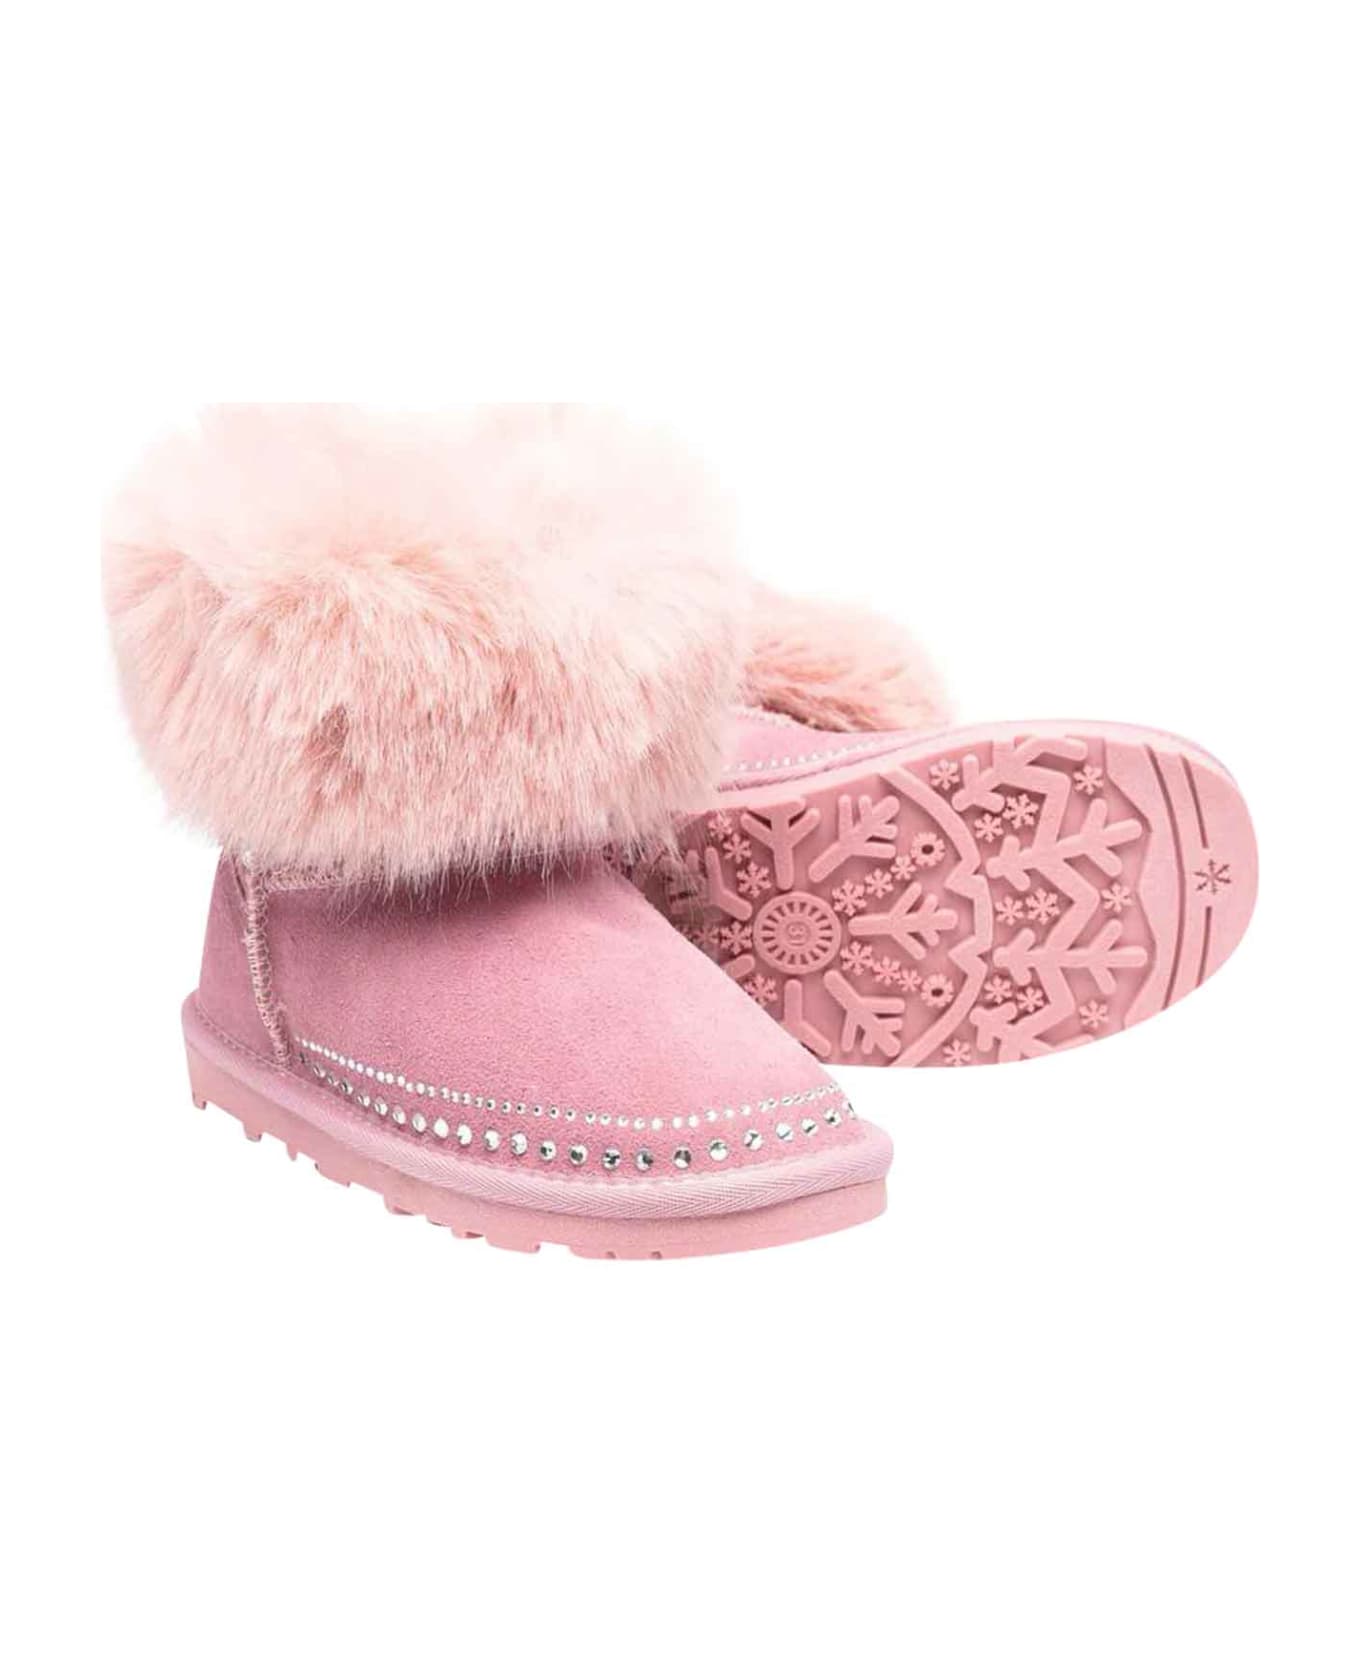 Monnalisa Pink Boots Teen Girl - Rosa